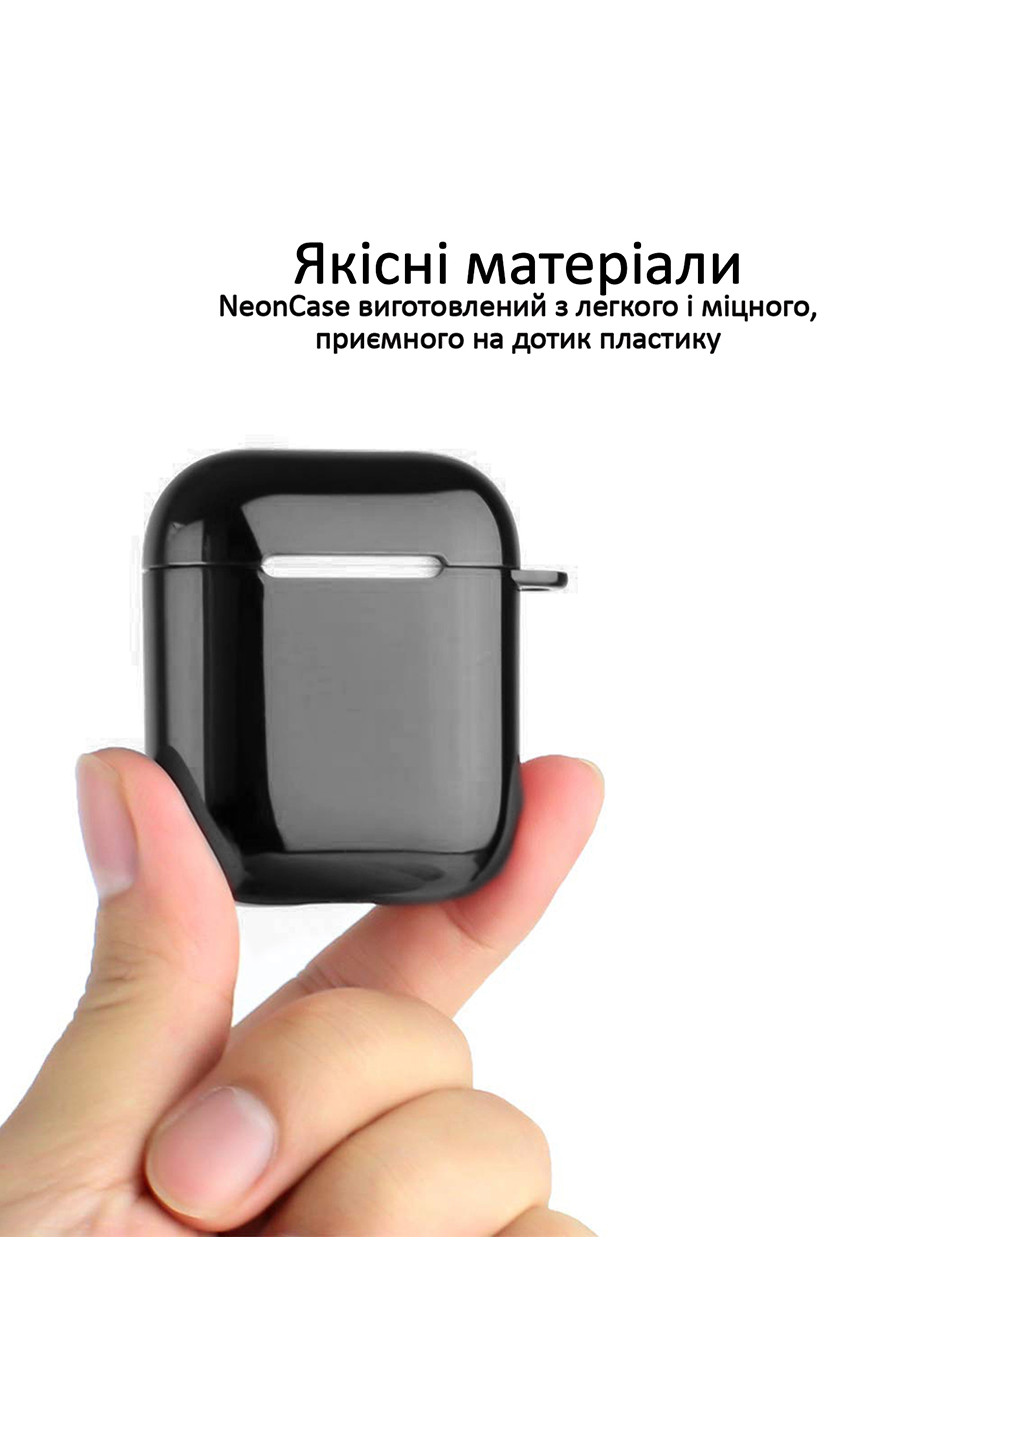 Чехол пластиковый с карабином NeonCase для Apple AirPods Black () Promate neoncase.black (200823462)